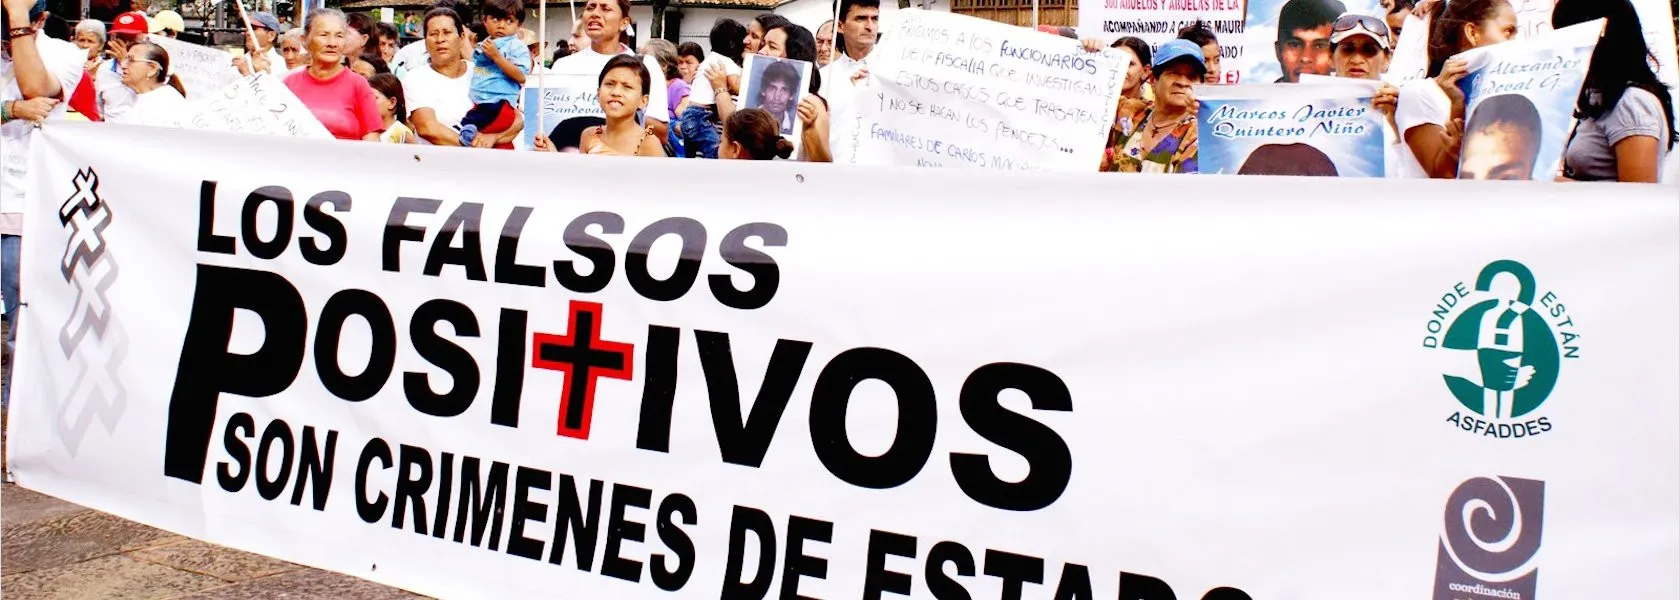 Veintiún militares colombianos admiten el asesinato de 247 